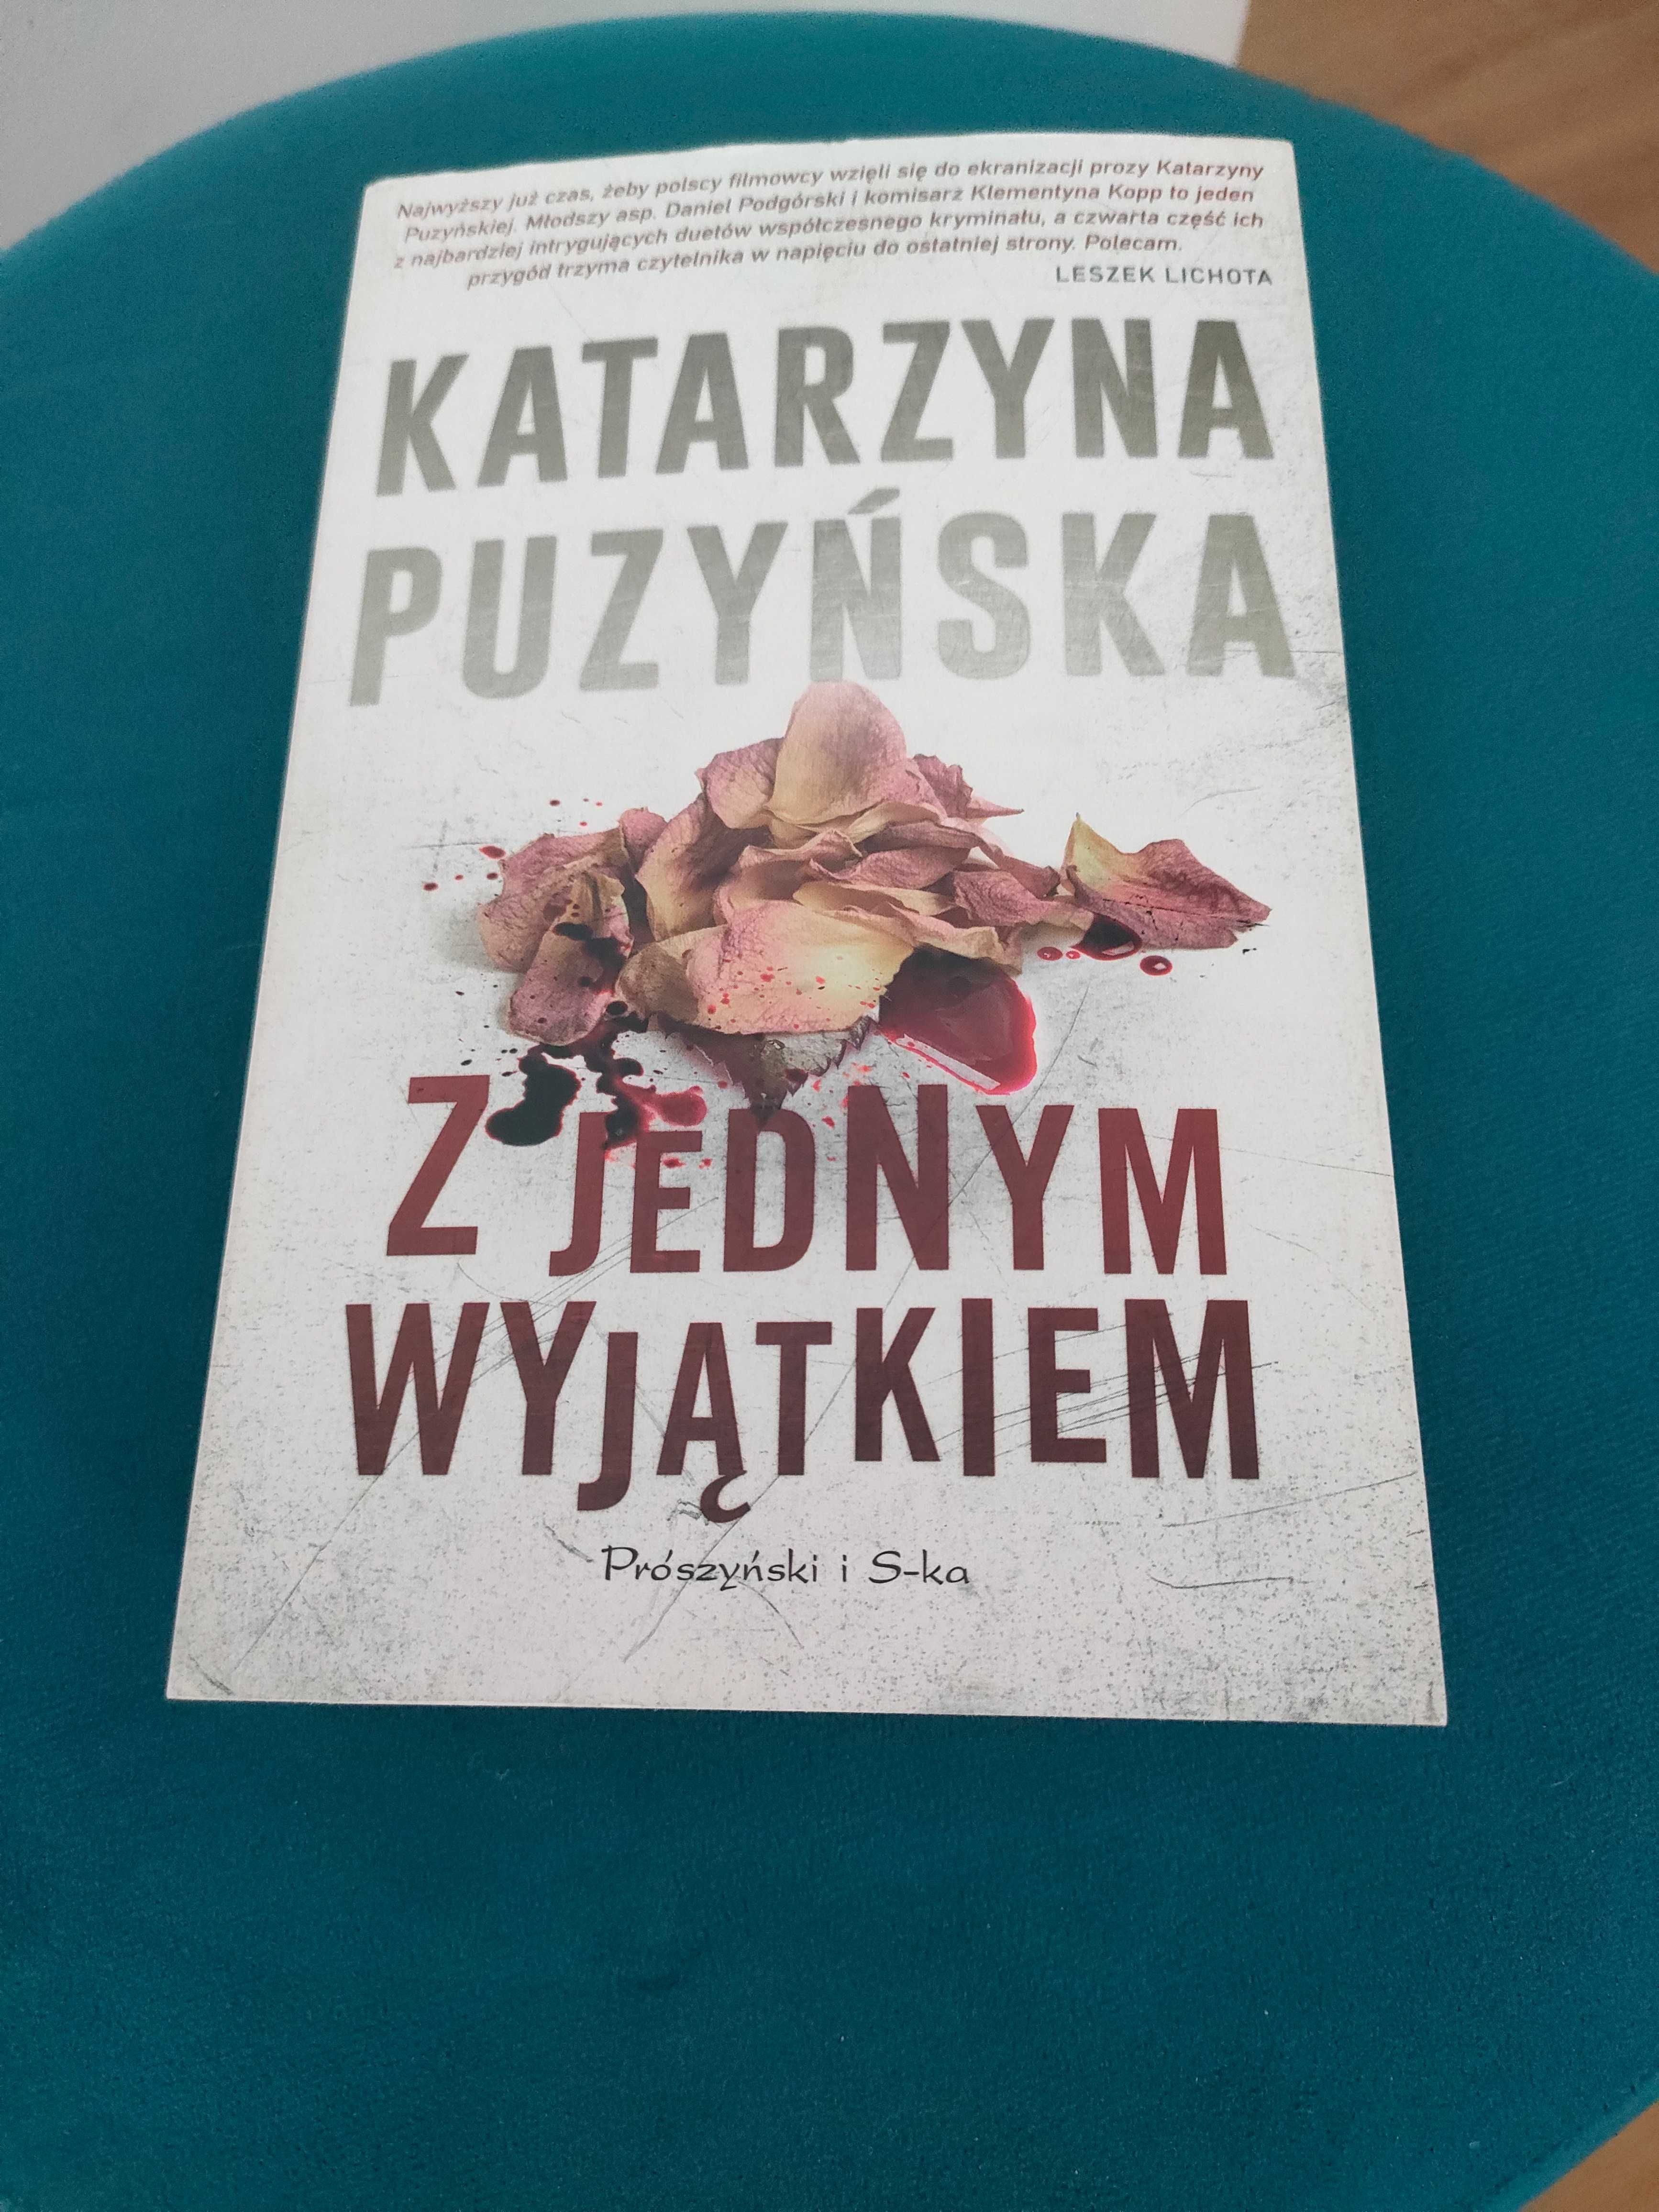 Książka Katarzyny Puzyńskiej "Z jednym wyjątkiem".